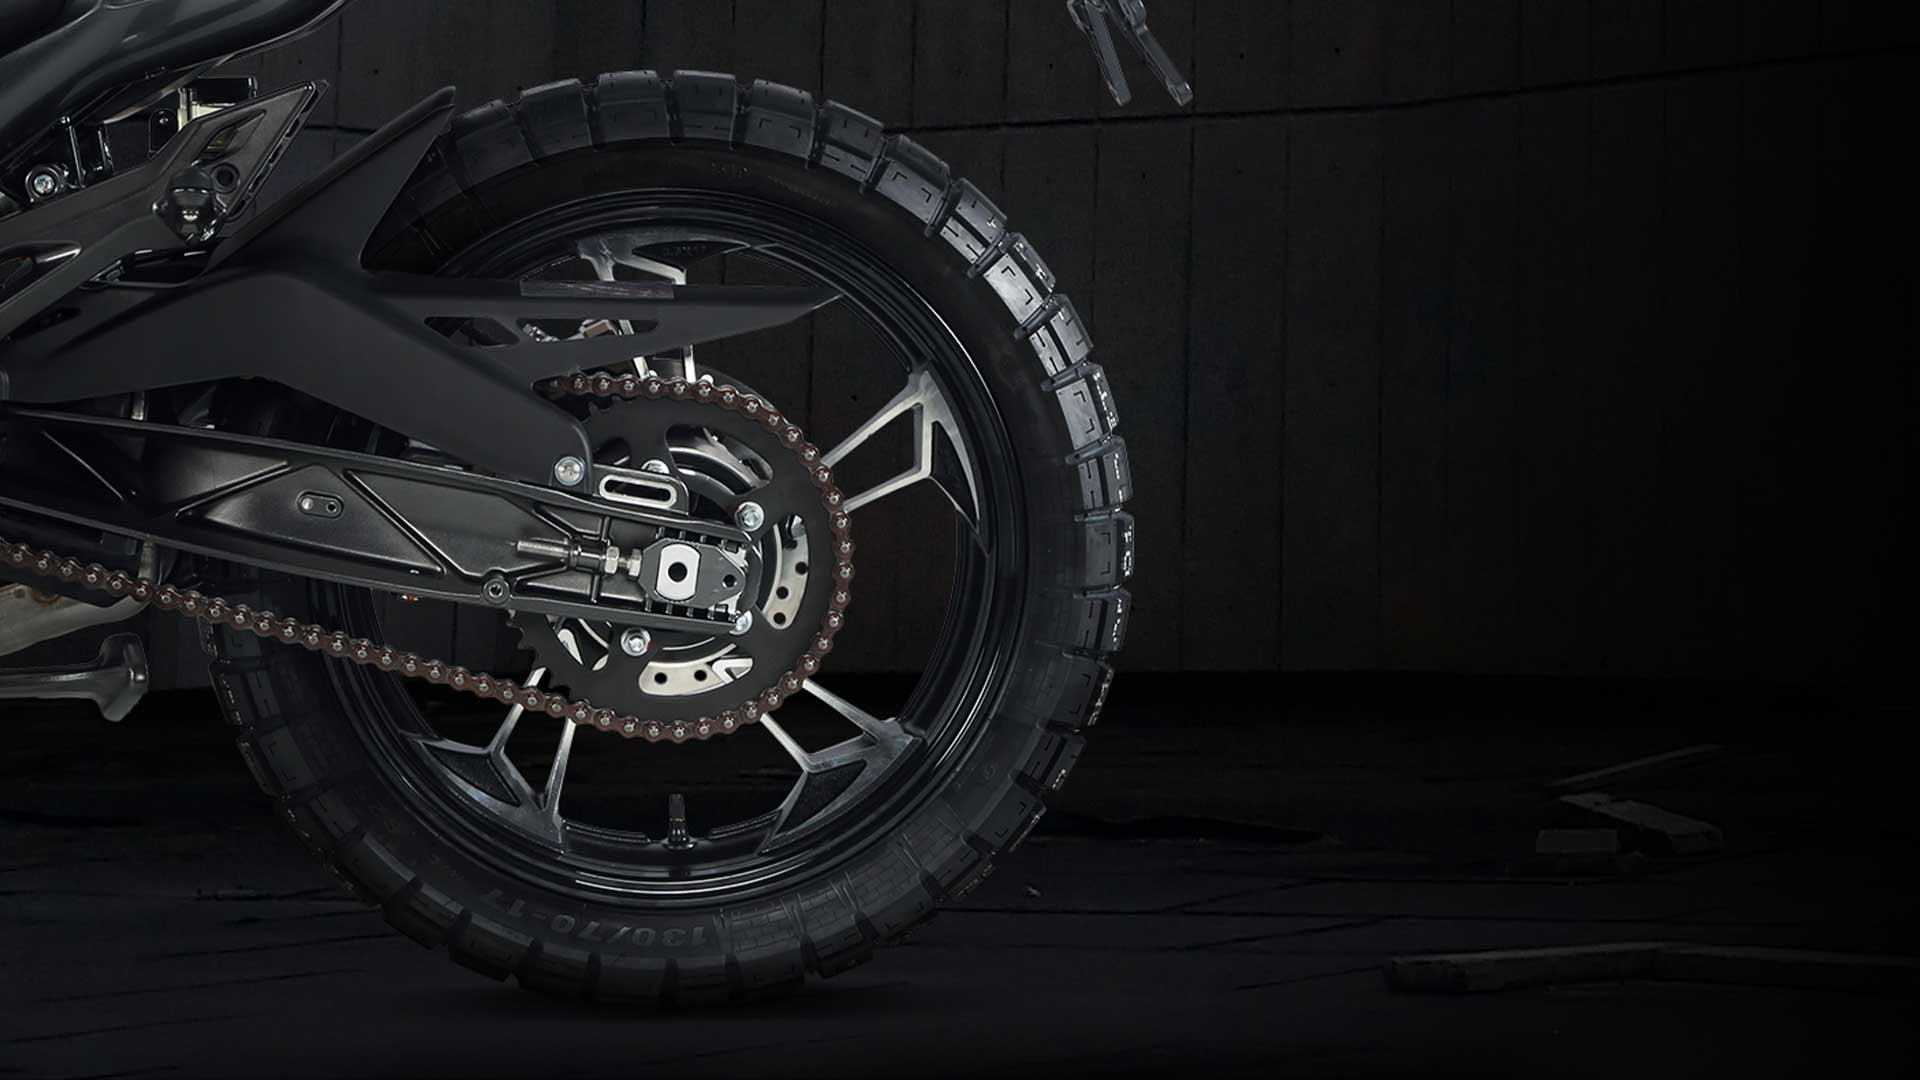 Geländegängige Reifen mit neuem Design